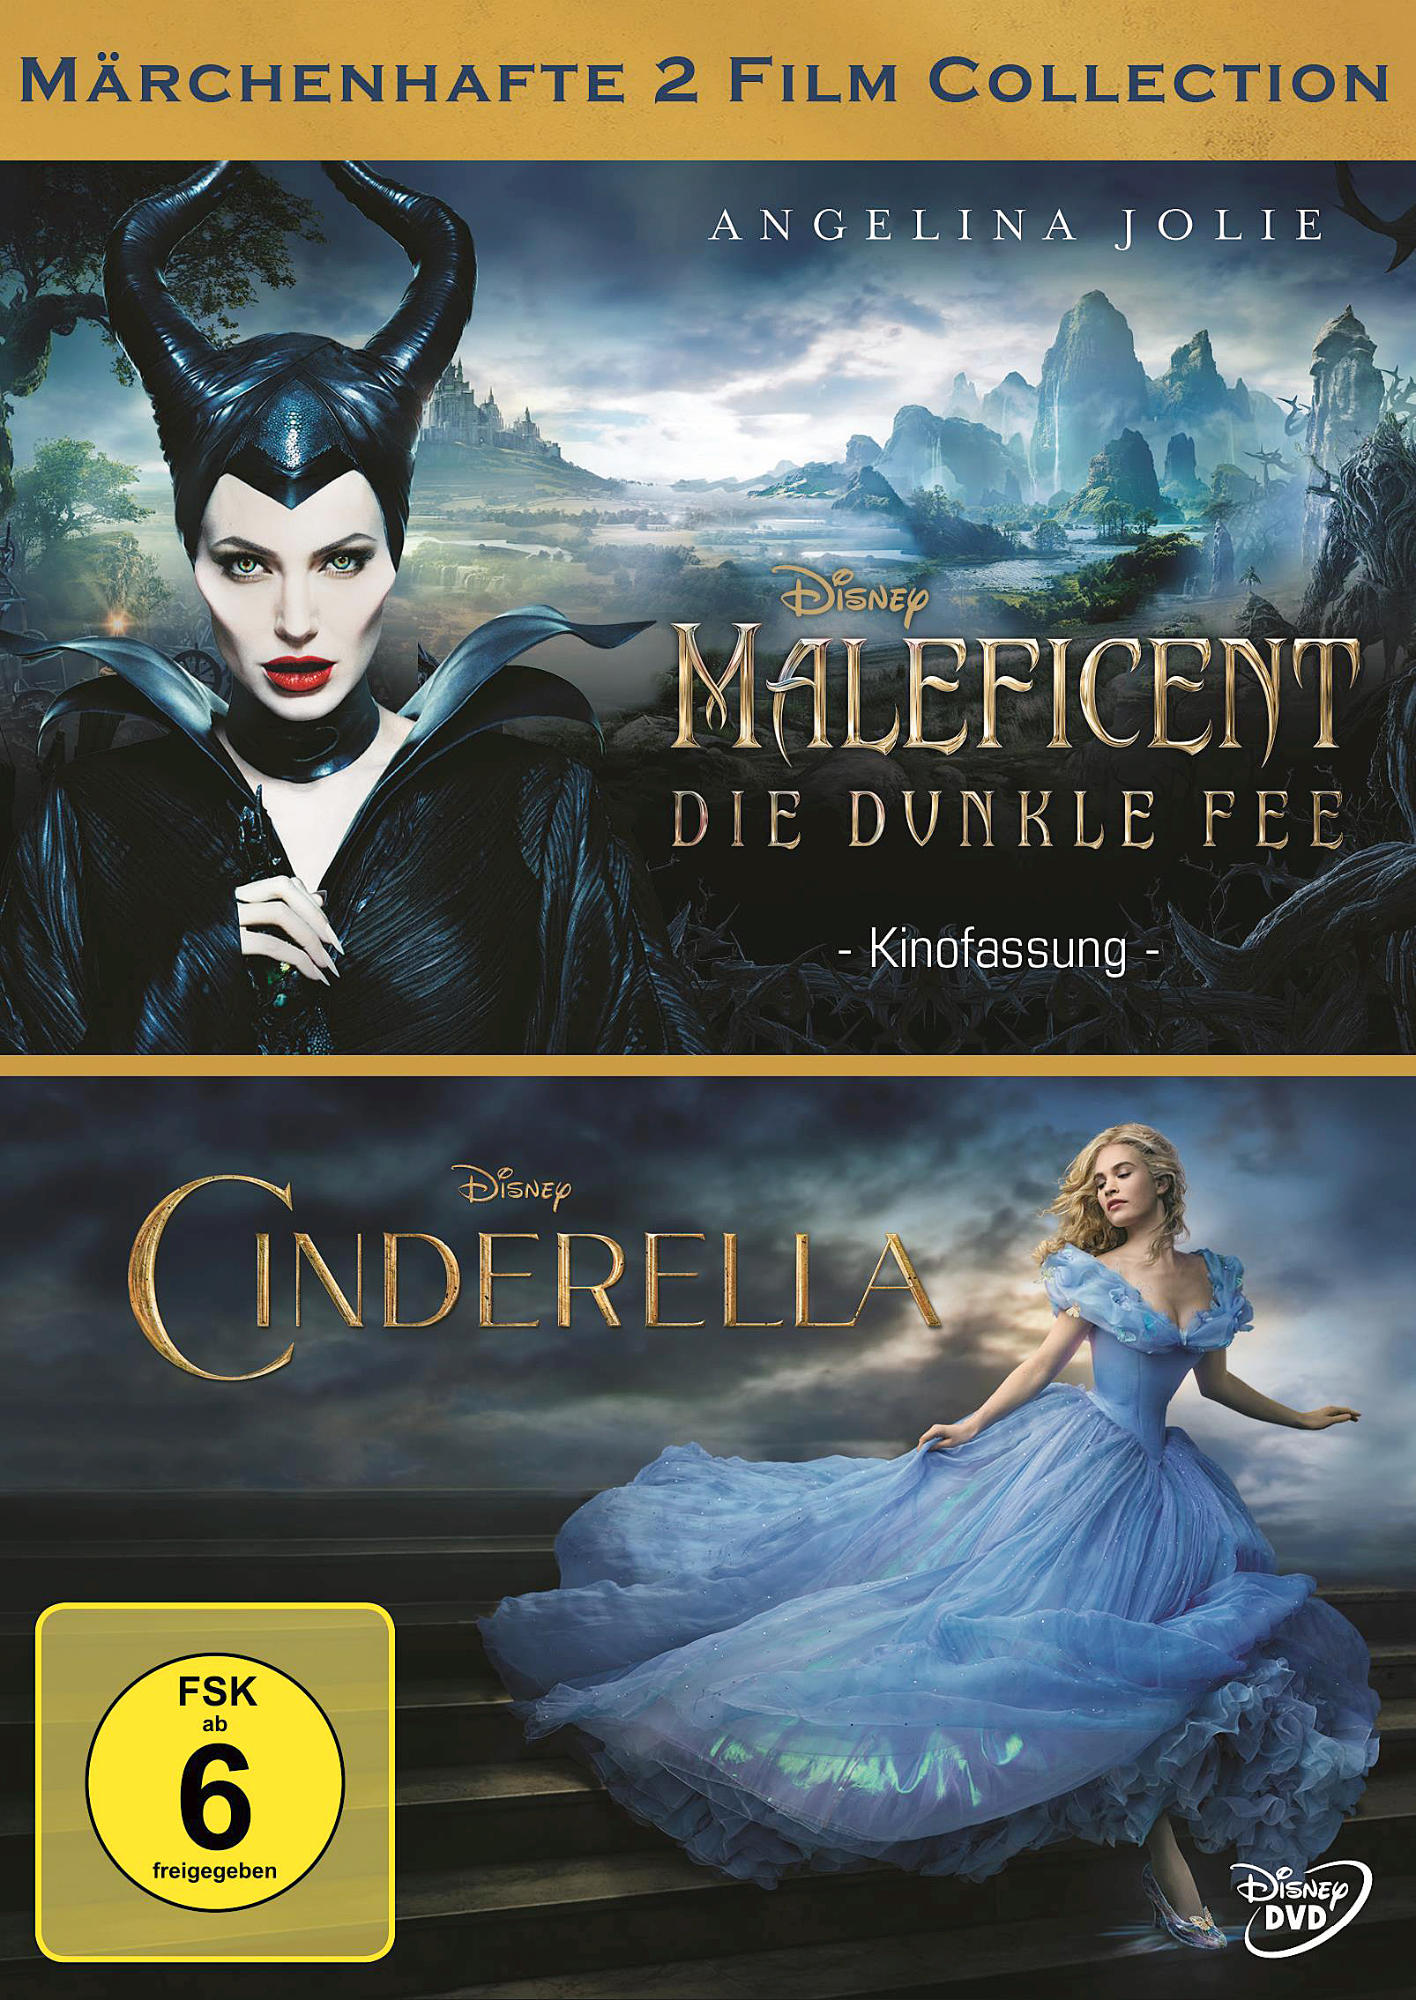 dunkle (Doppelpack) DVD Die Maleficent - Fee/Cinderella